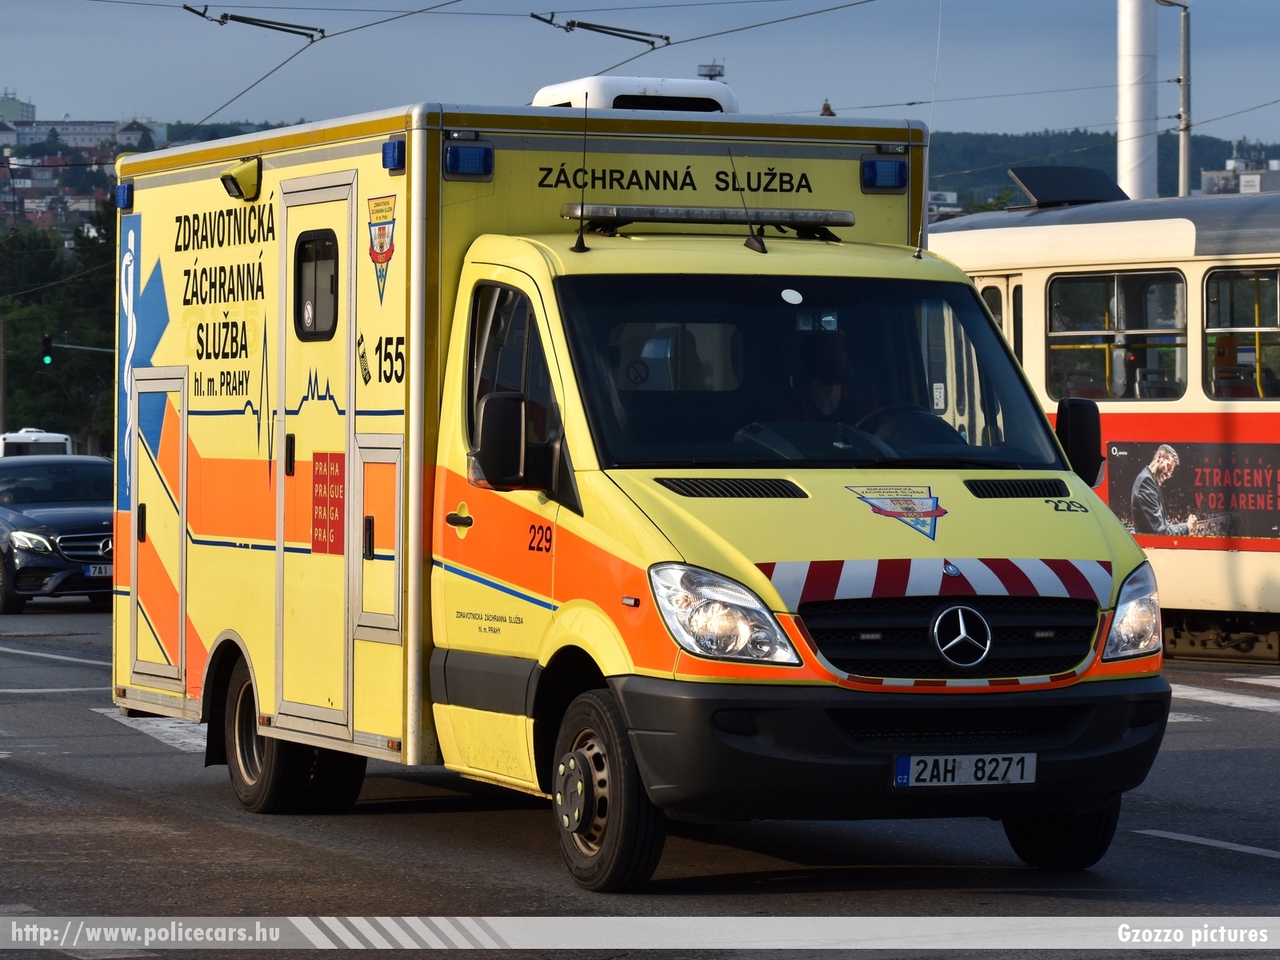 Mercedes Sprinter II, Prága, fotó: Gzozzo pictures
Keywords: cseh Csehország czech ambulance mentő mentőautó